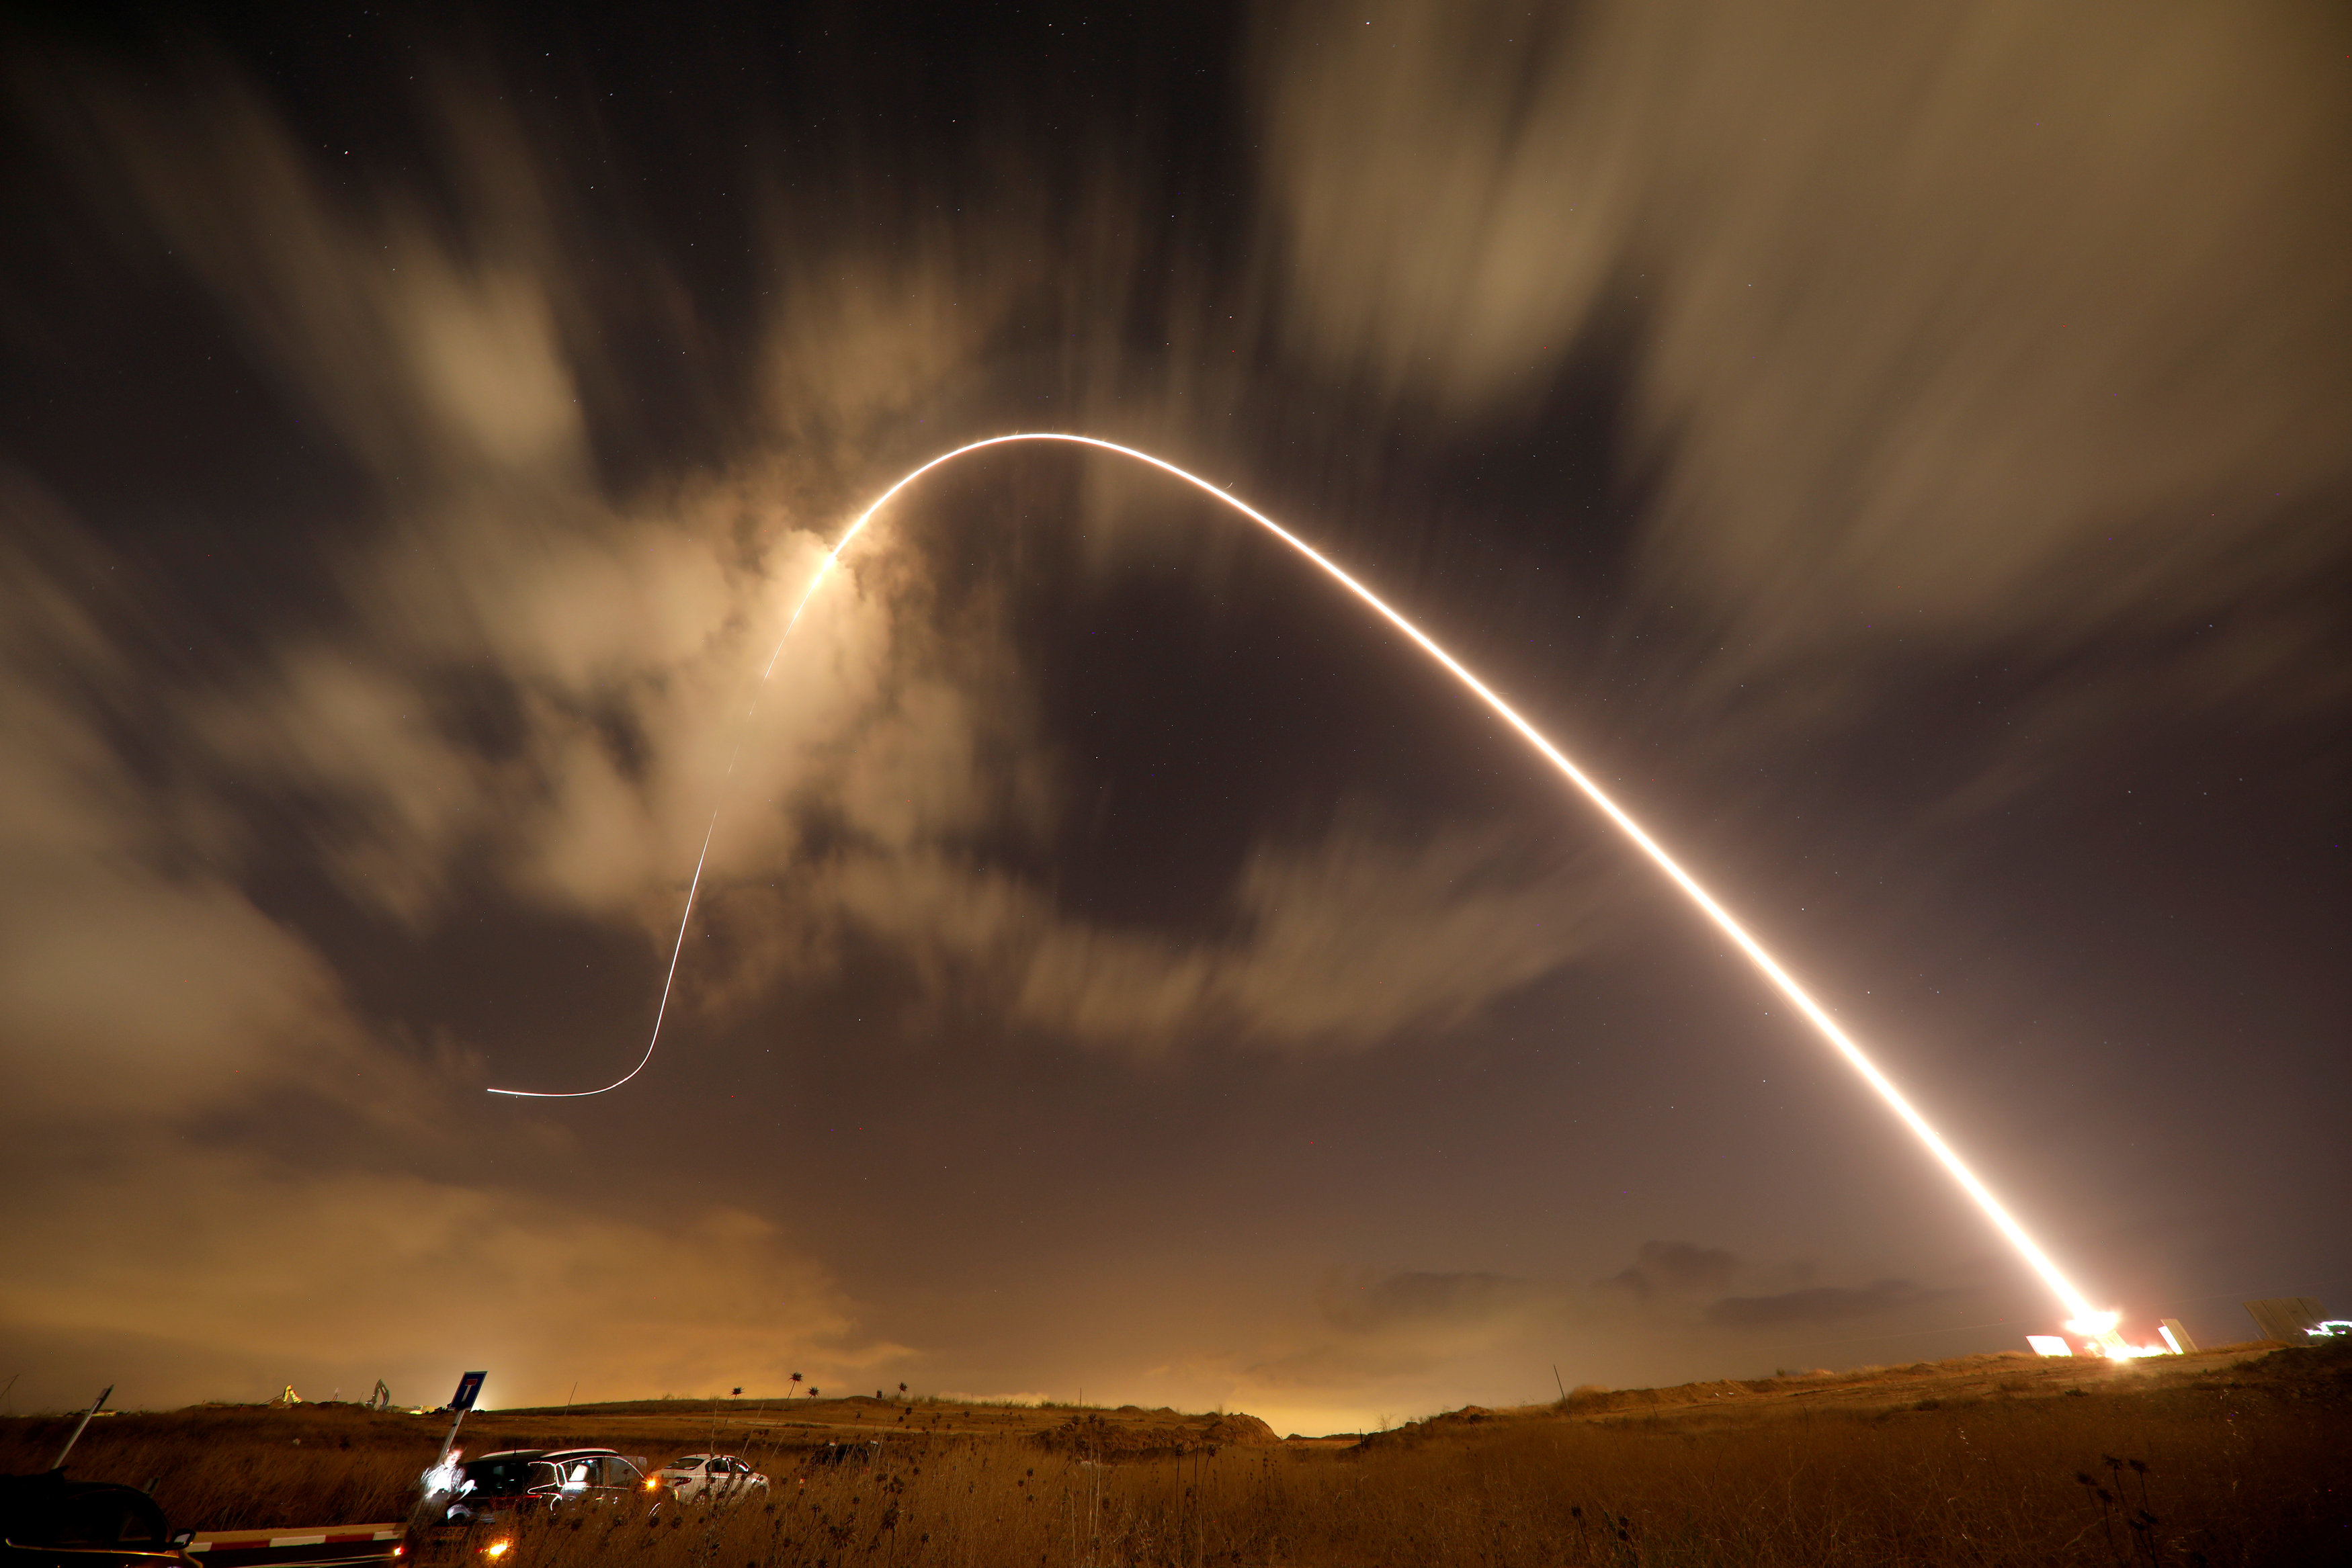 El sistema anti-misiles Cúpula de Hierro intercepta un cohete lanzado desde Gaza el 9 de agosto 2018 (Imagen de referencia / REUTERS)